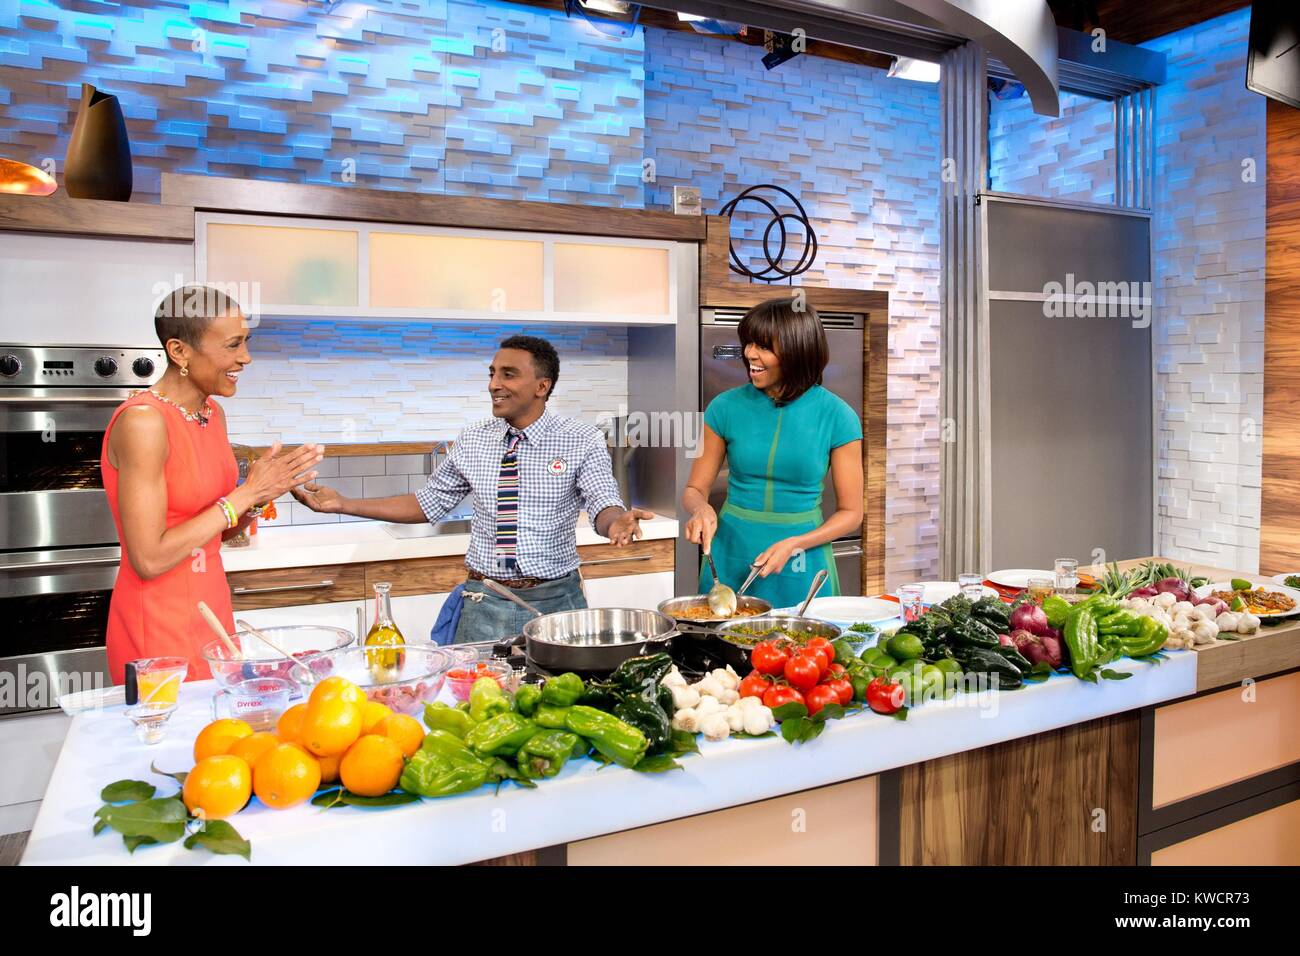 La Première Dame Michelle Obama, 'Good Morning America' anchor Robin Roberts, et le chef Marcus Samuelsson. Ils ont été la promotion de modes de cuisson avec les légumes. 22 février, 2013. (BSLOC 2015 3 105) Banque D'Images